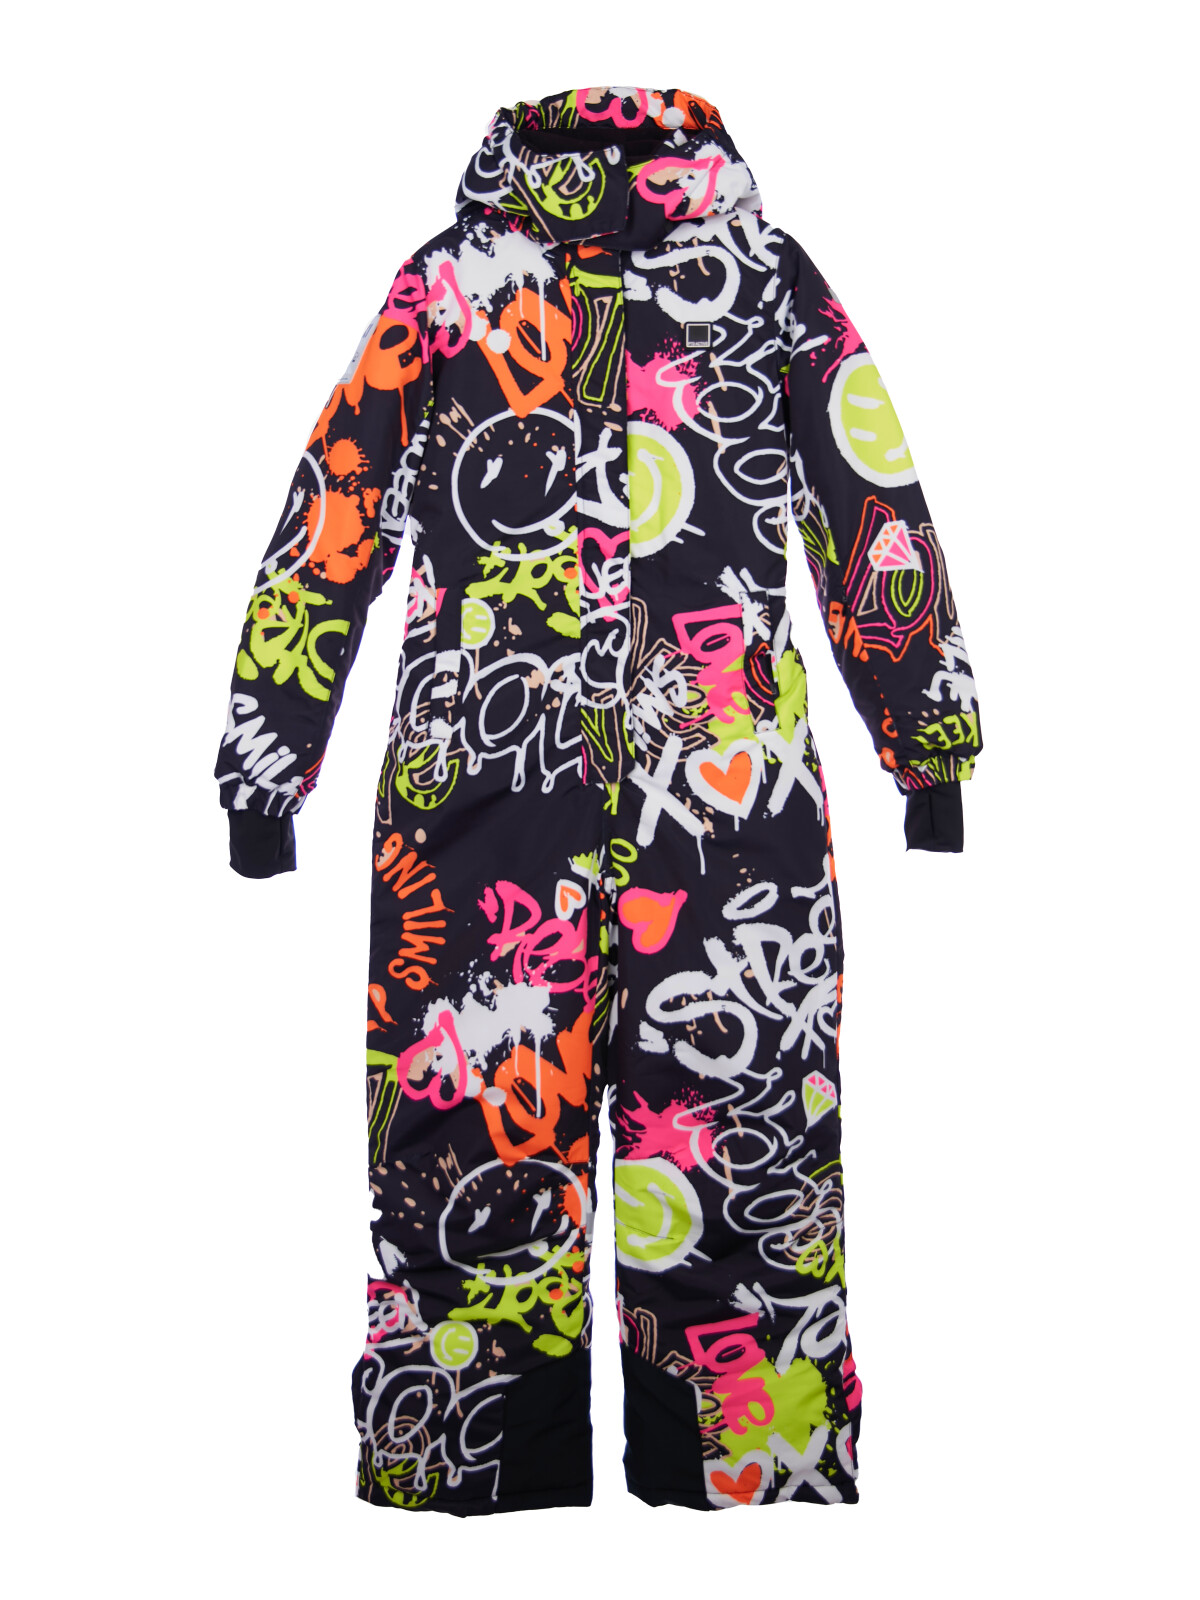 Комбинезон текстильный с полиуретановым покрытием для девочек PlayToday, цветной, 158